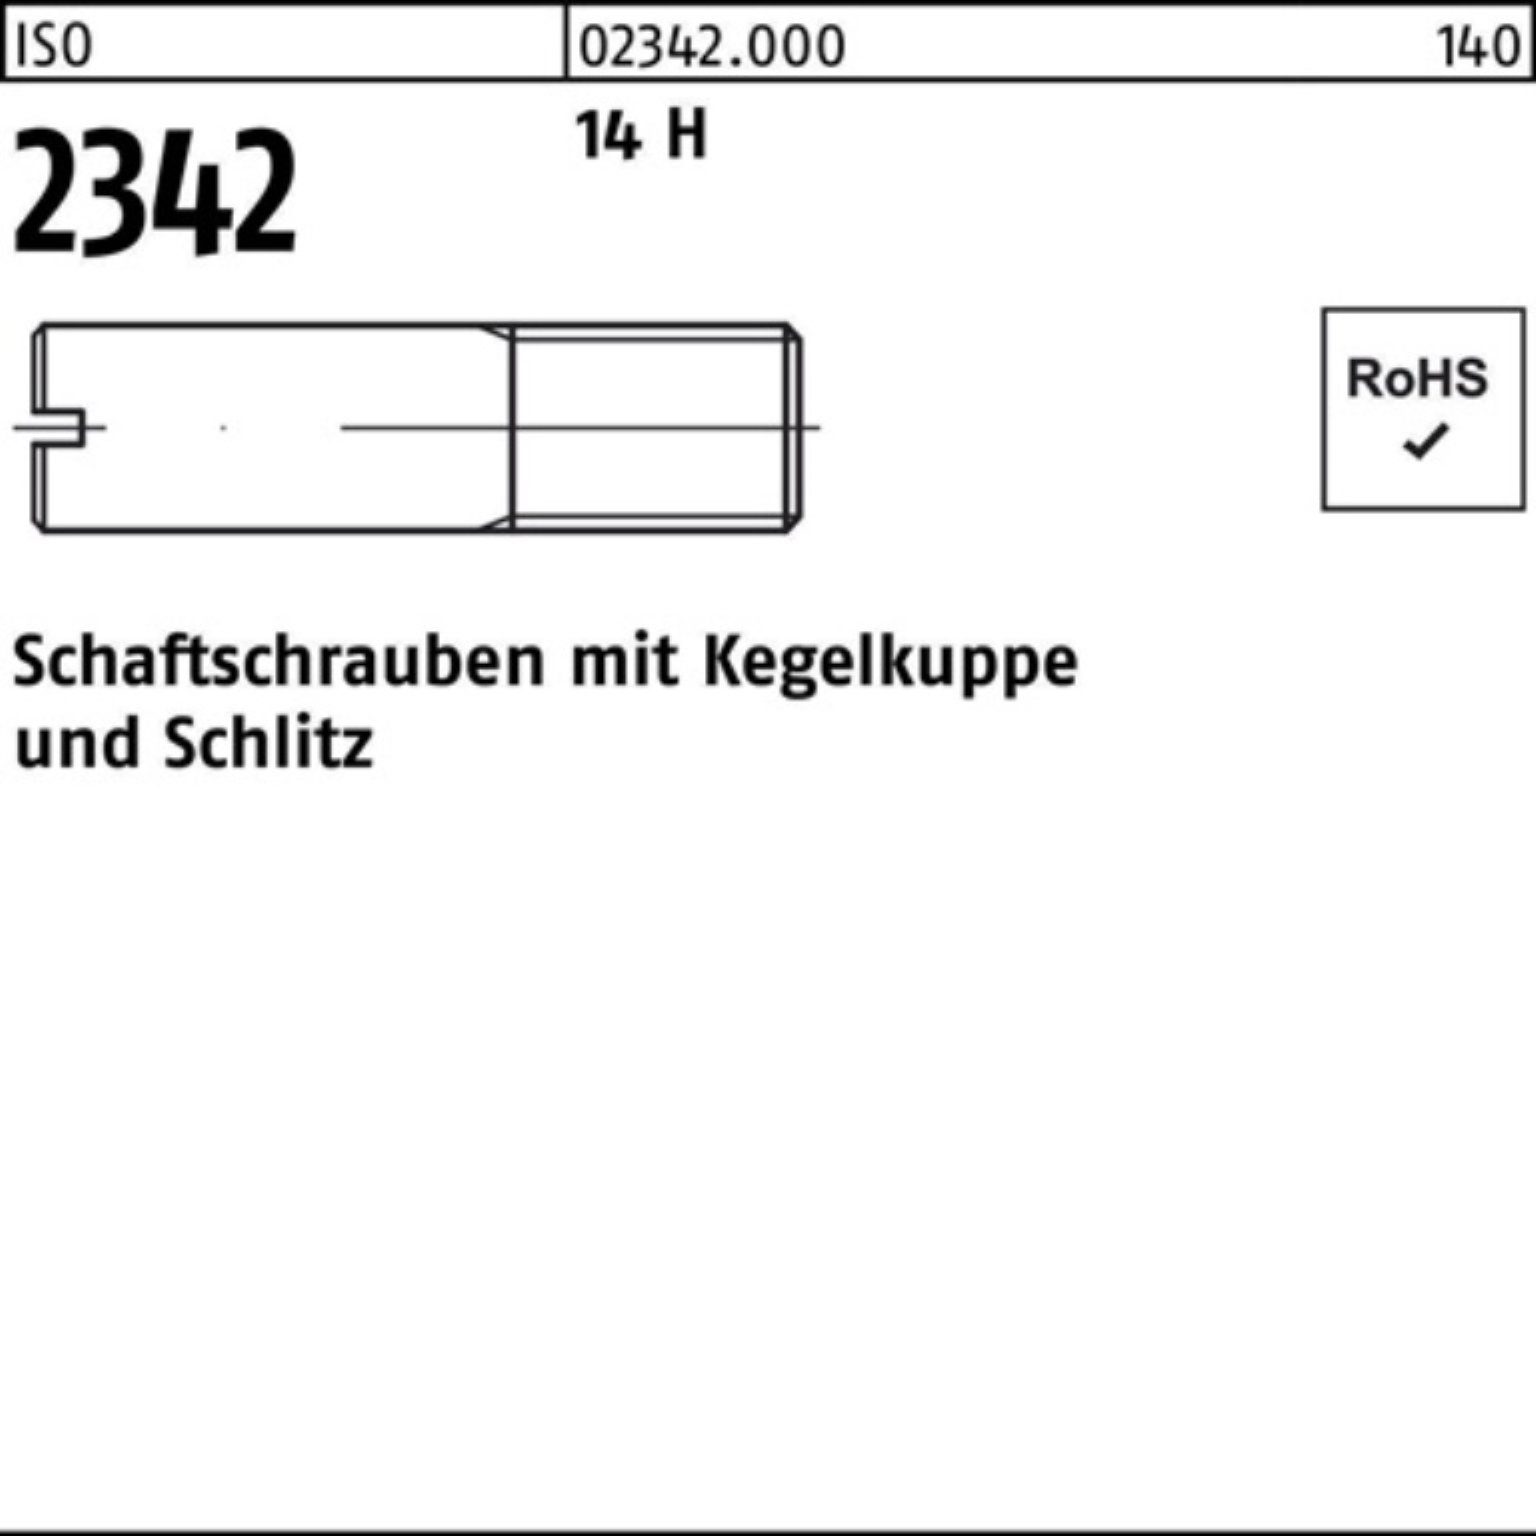 Reyher Schraube 100er Pack Schaftschraube ISO 2342 Kegelkuppe/Schlitz M10x 25 14 H 50